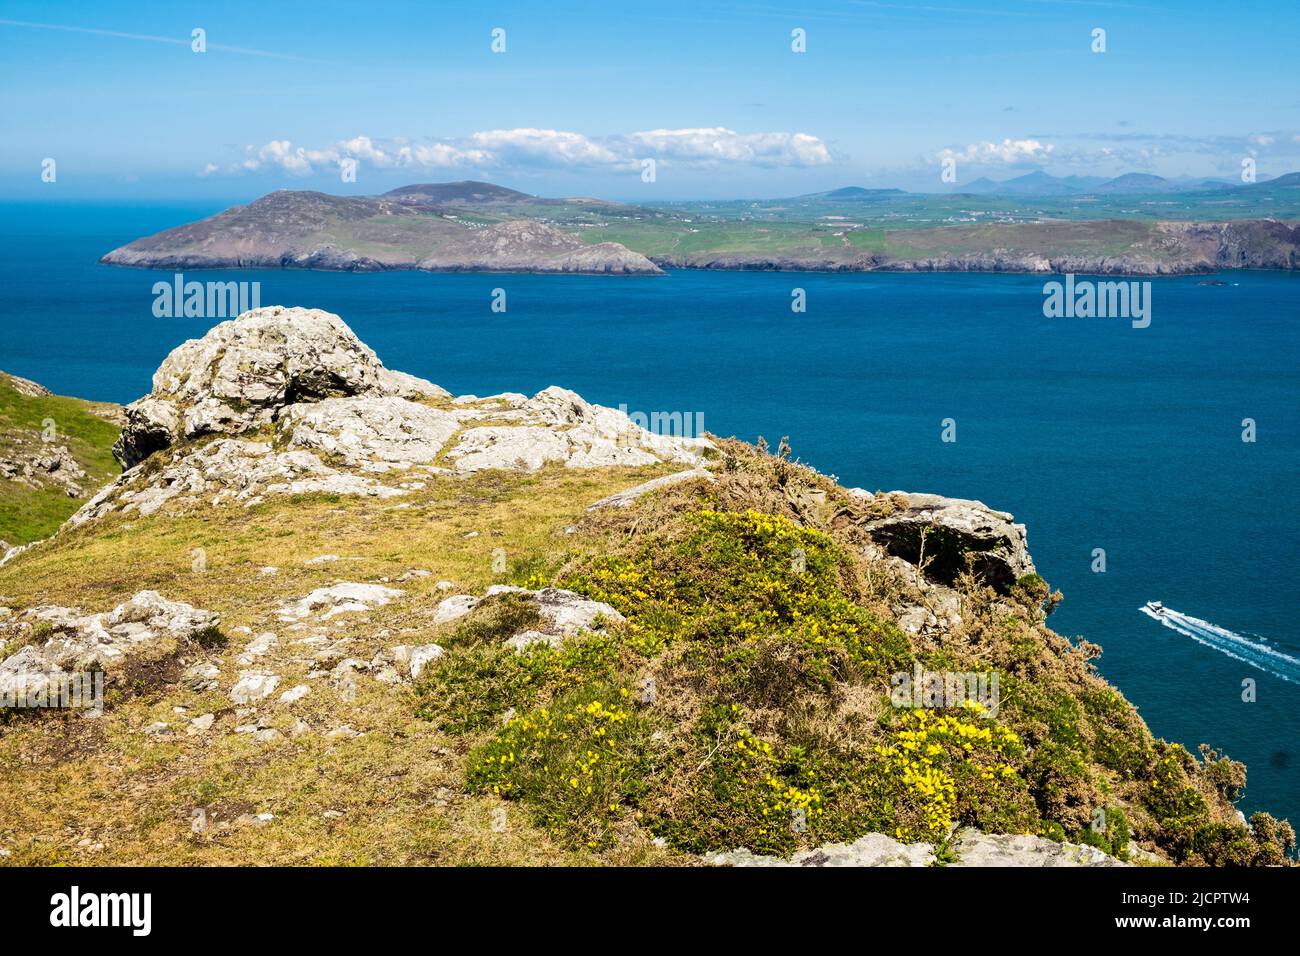 Blick über das ruhige blaue Meer zur Halbinsel Llyn vom Berg Mynydd Enlli auf Ynys Enlli oder Bardsey Island an der walisischen Westküste. Gwynedd, Nordwales, Großbritannien Stockfoto